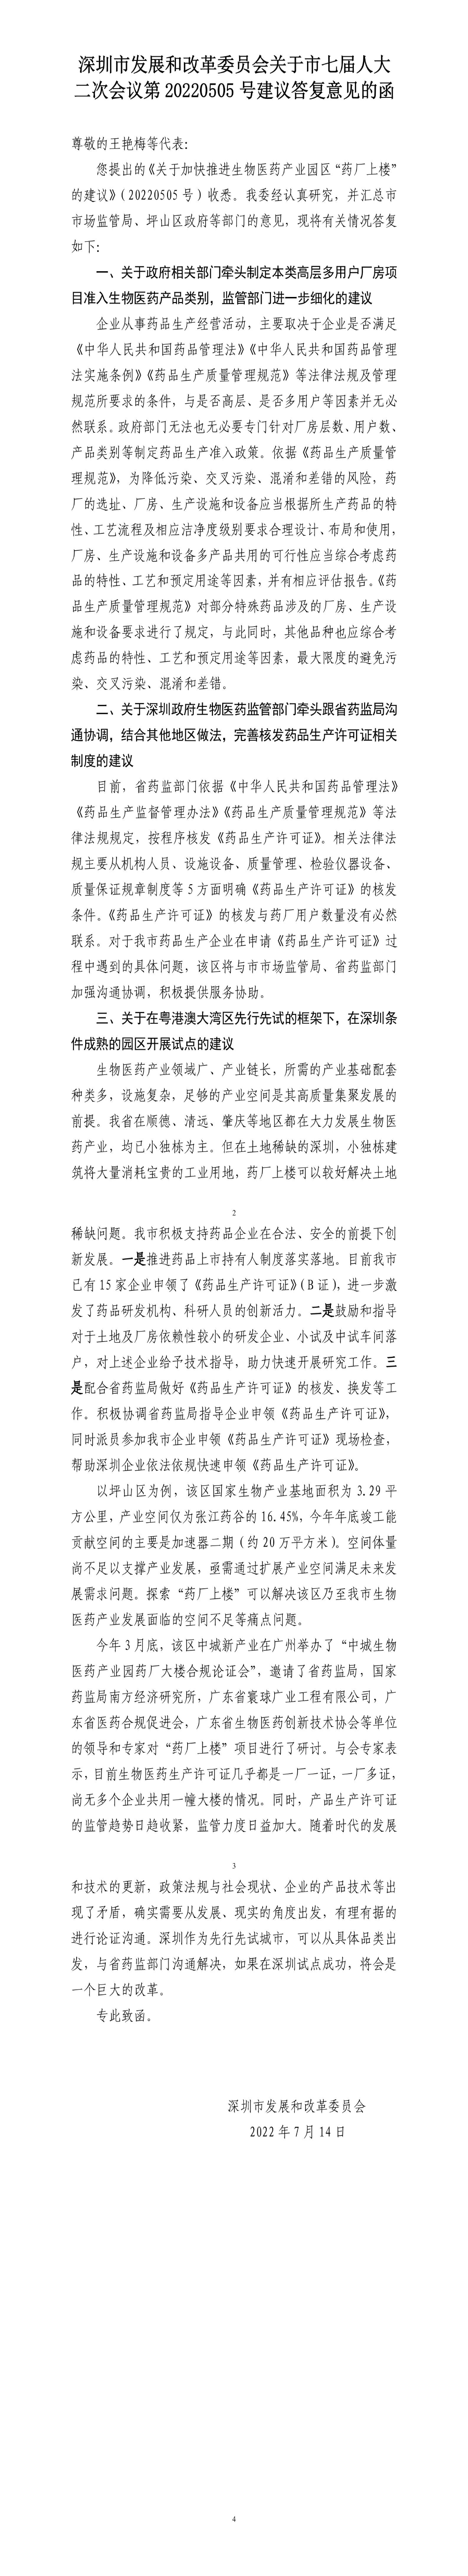 深圳市发展和改革委员会关于市七届人大二次会议第20220505号建议答复意见的函.jpg